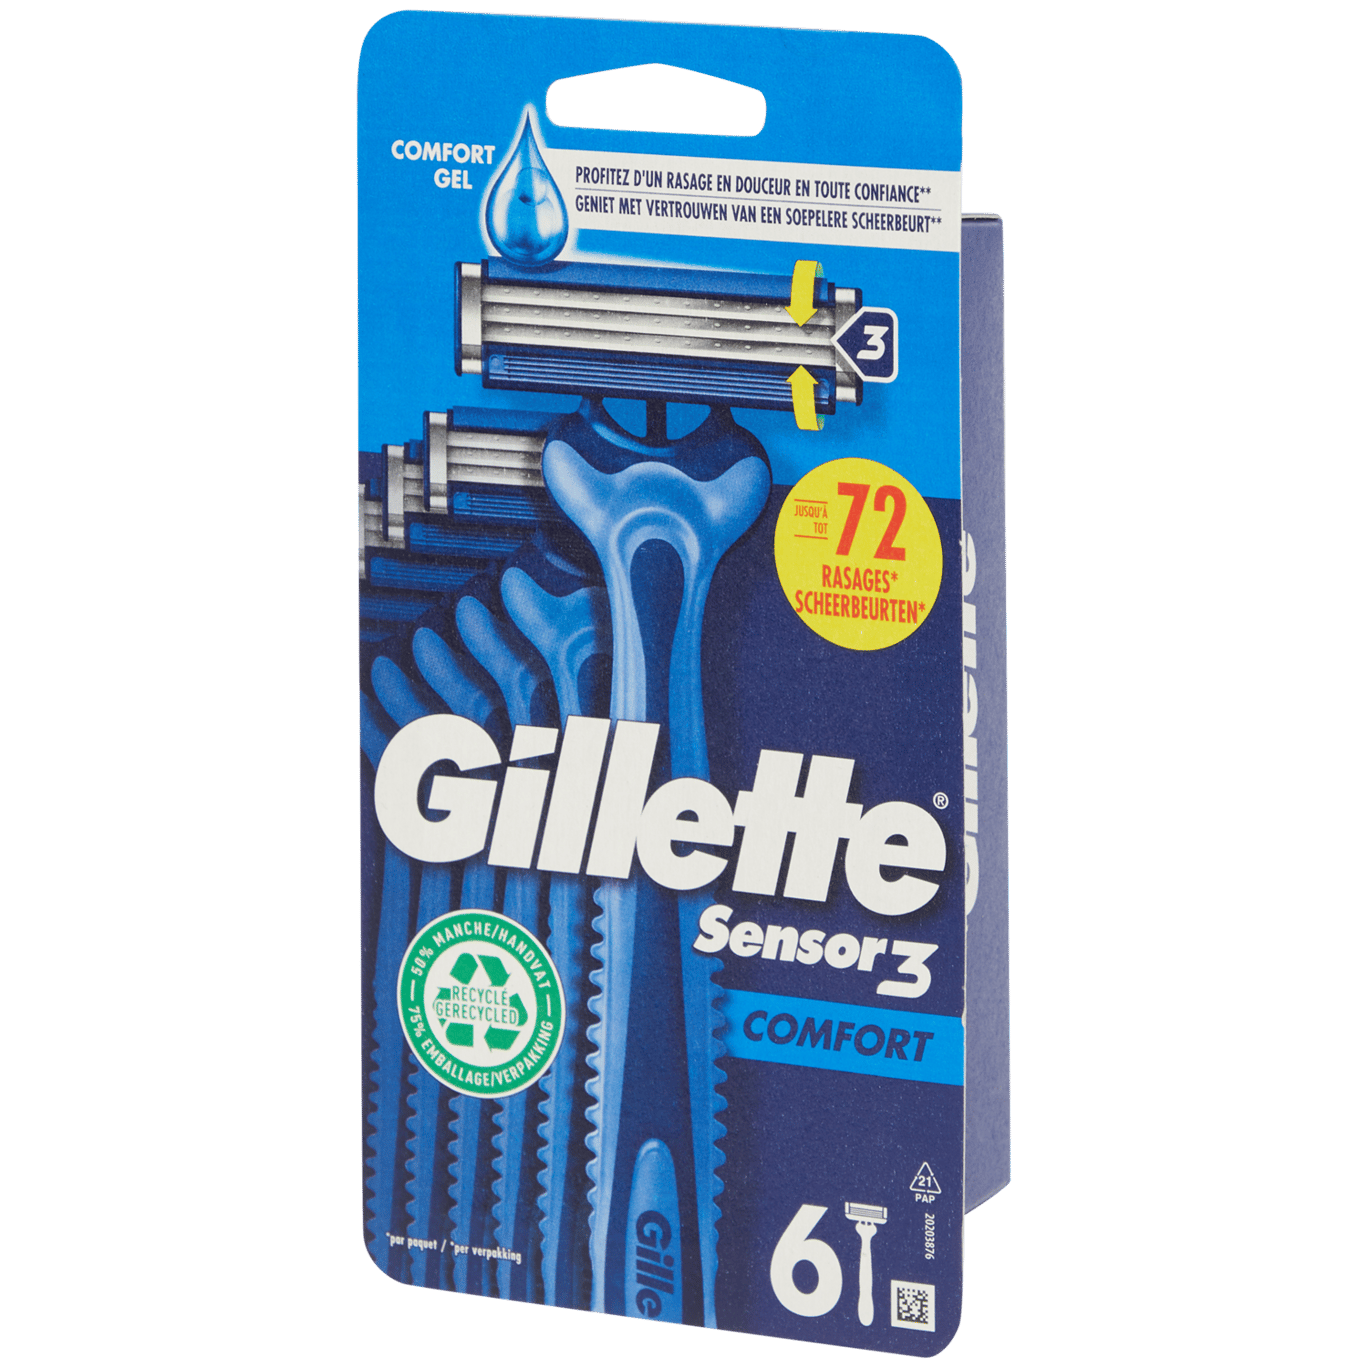 Gillette Sensor 3 scheermesjes Comfort